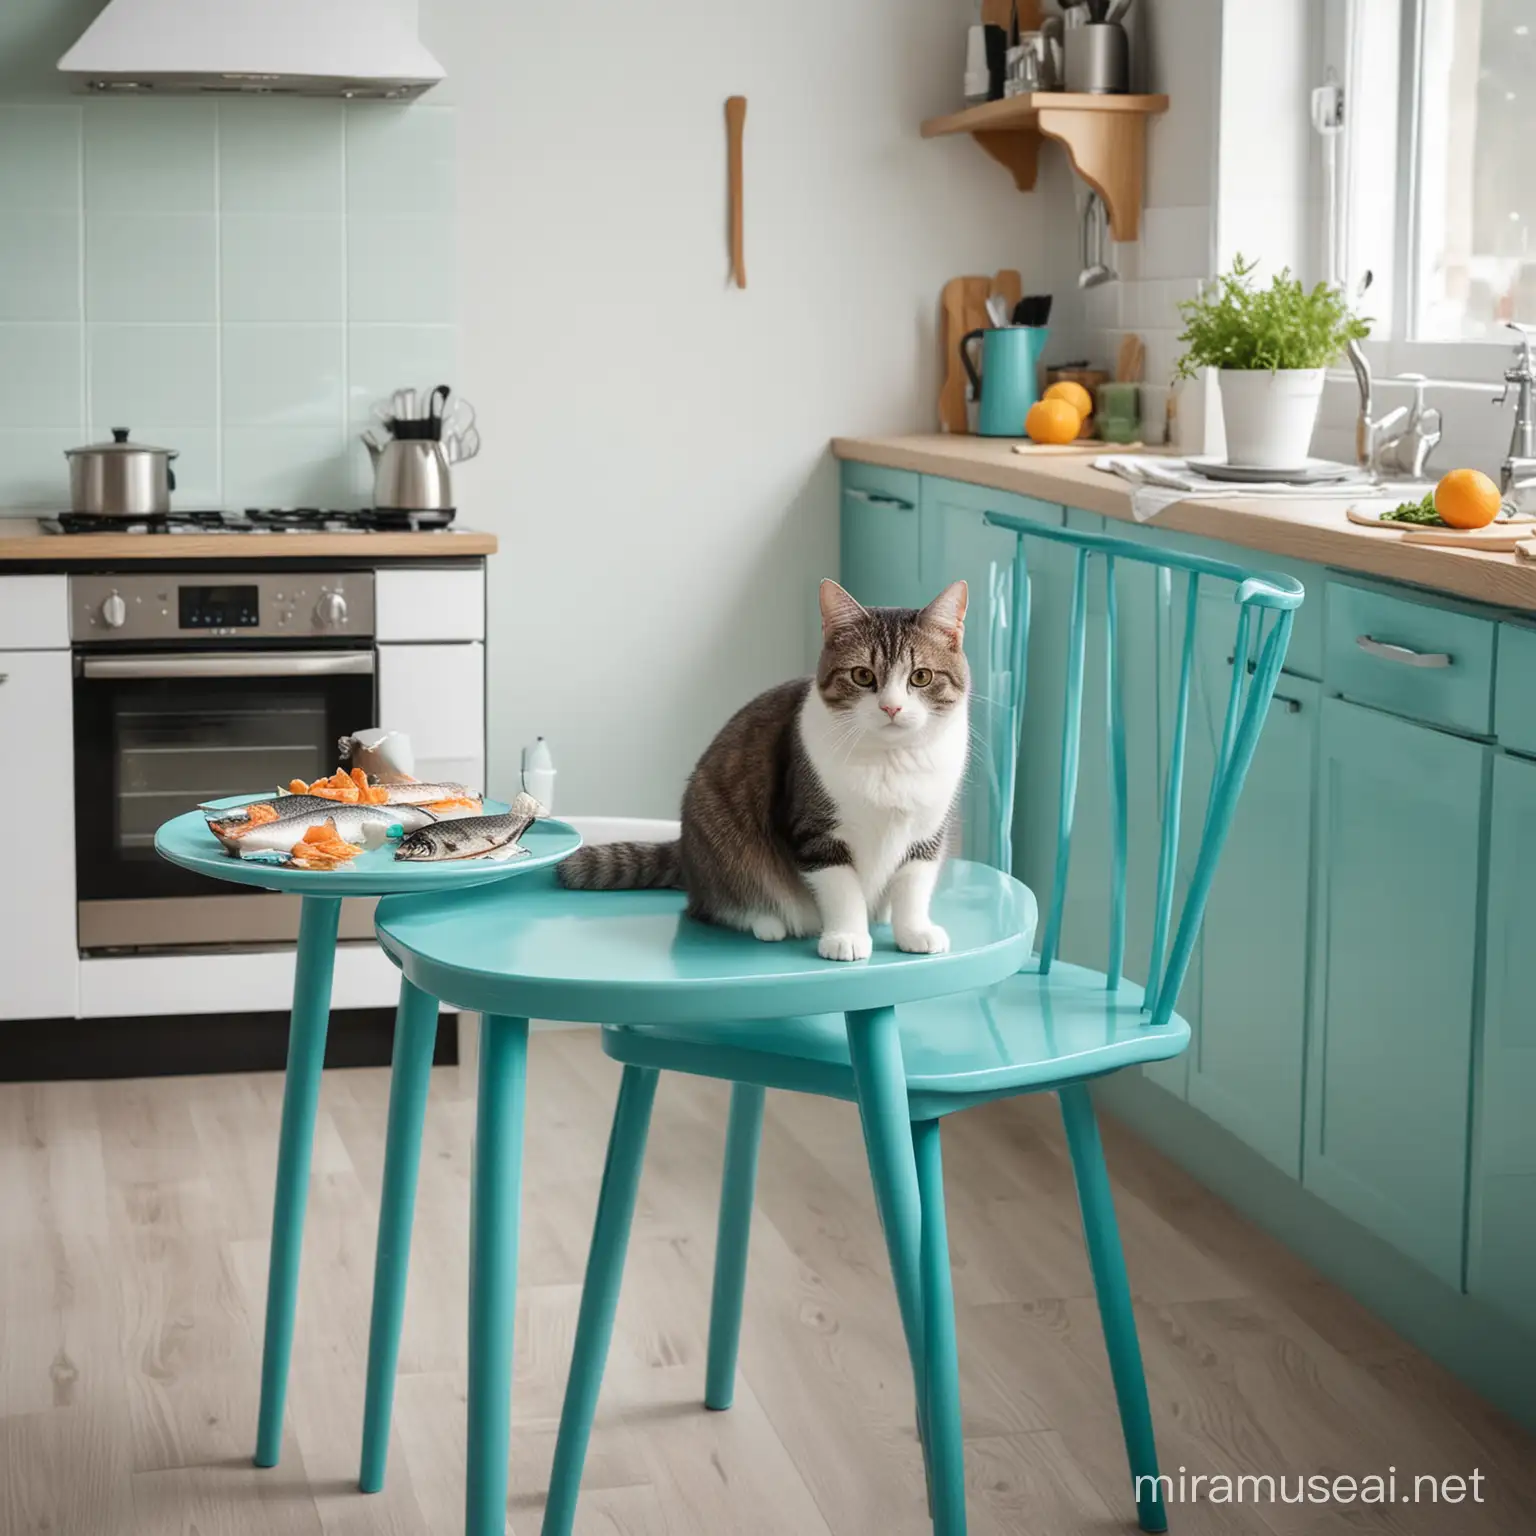 Котик сидит на стуле за столом на современной кухне в бирюзовых тонах. На столе стоит тарелка с рыбой